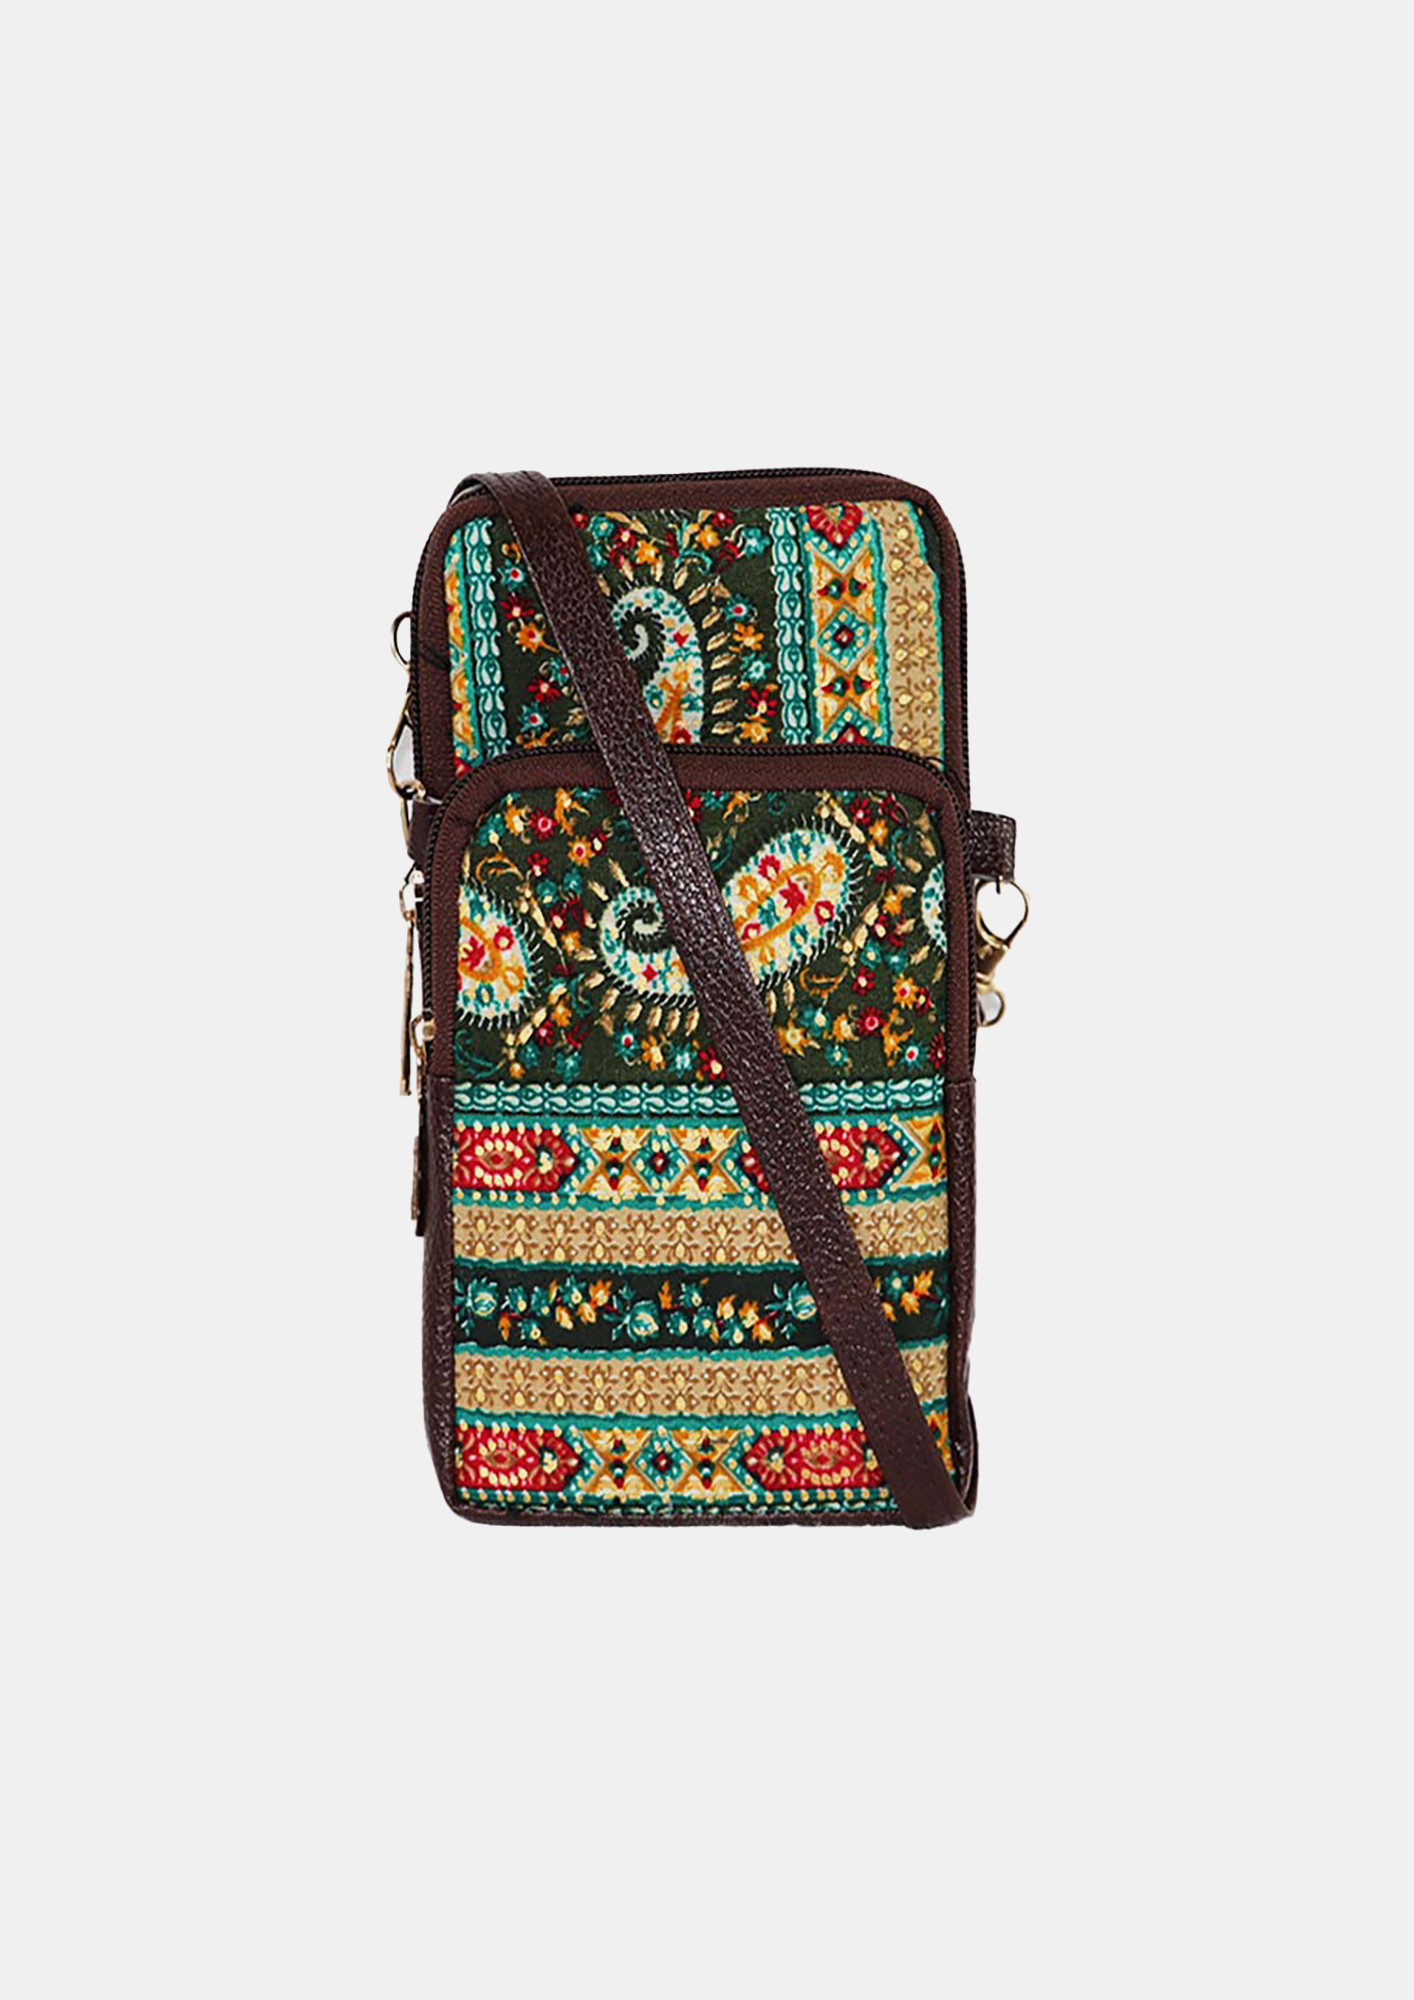 Multicolour Mini Mobile Sling Bag For Women And Girls